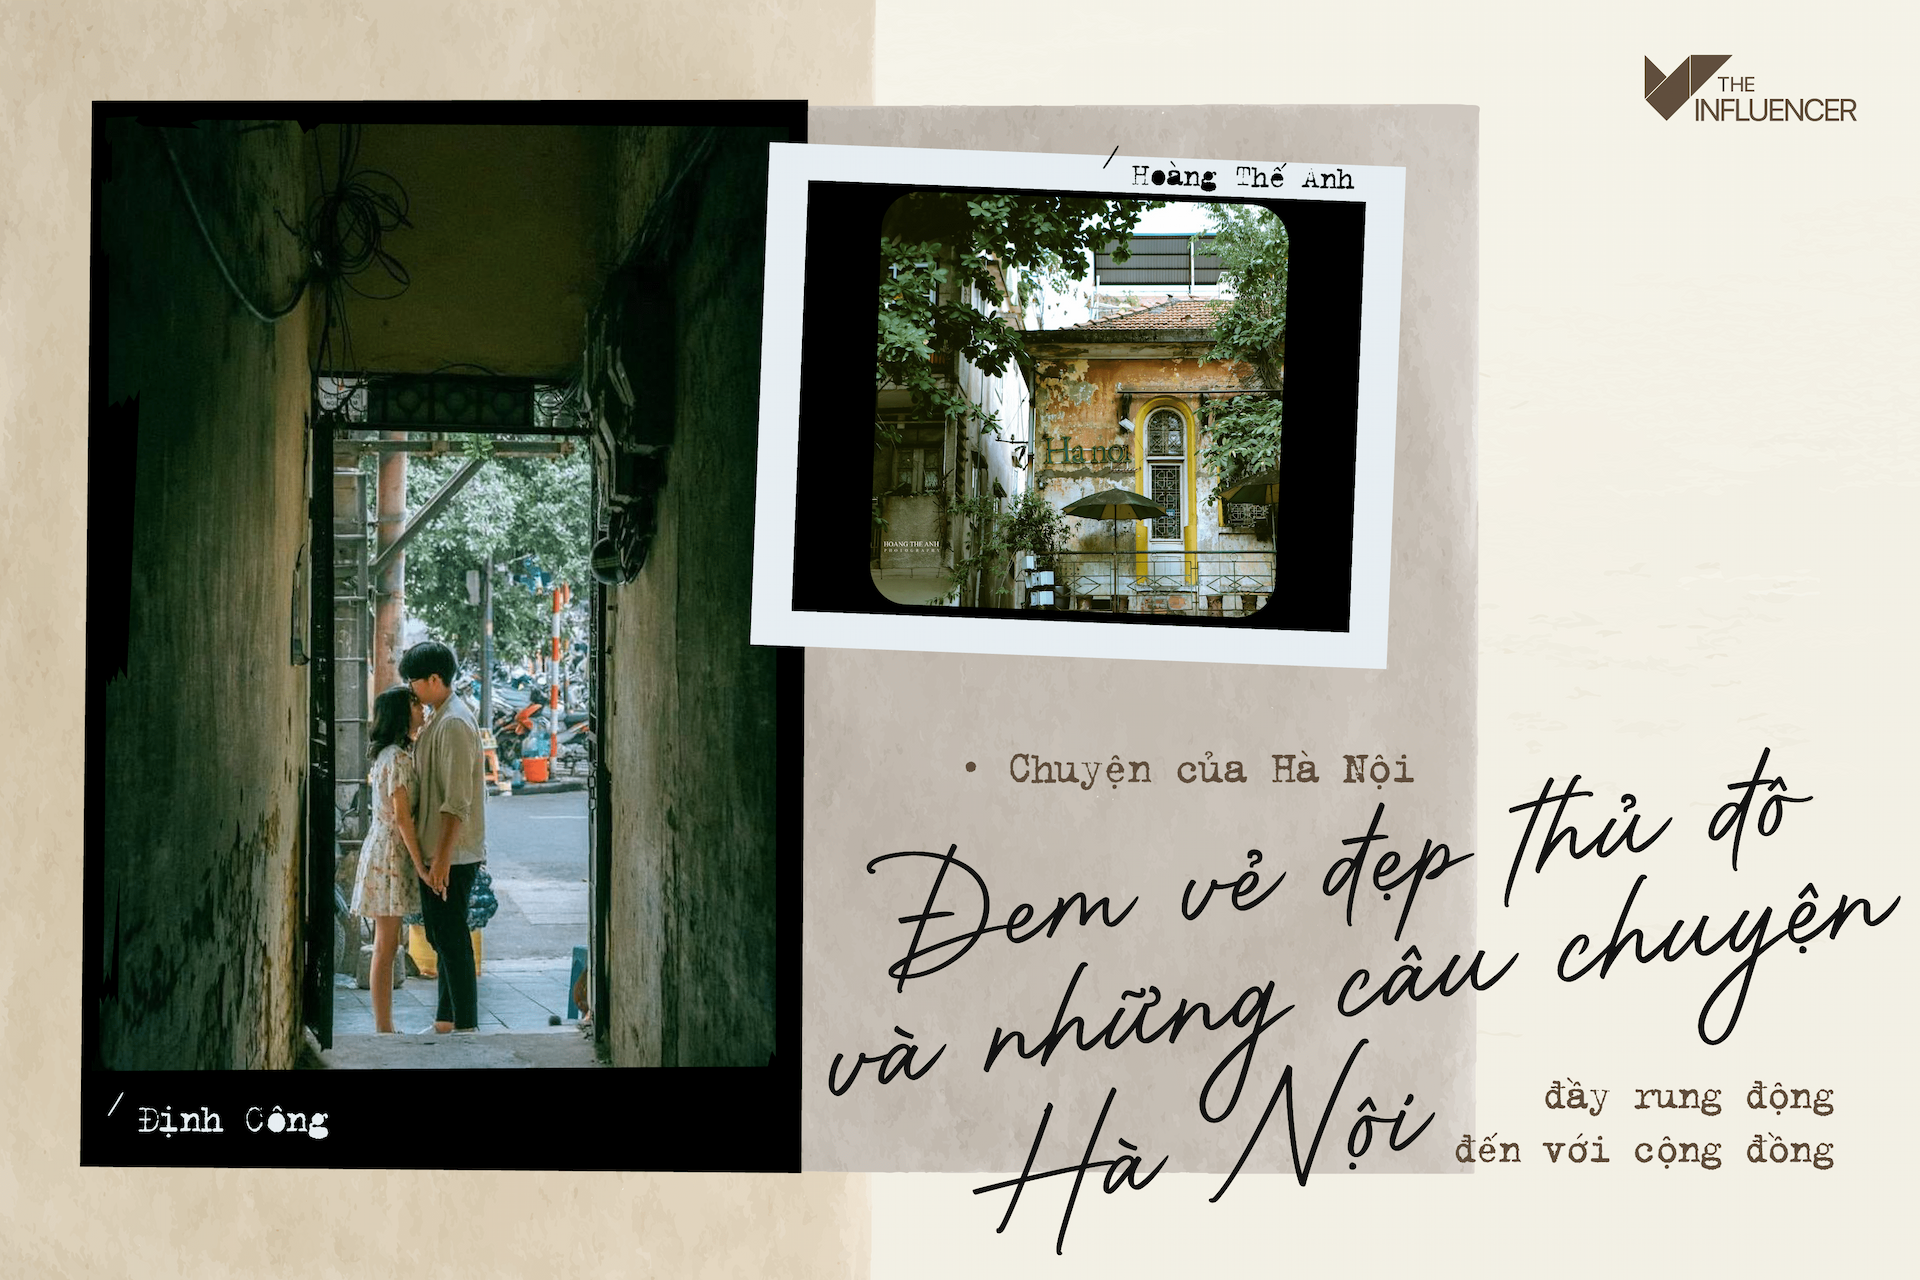 Chuyện của Hà Nội: Đem vẻ đẹp thủ đô và những câu chuyện Hà Nội đầy rung động đến với cộng đồng